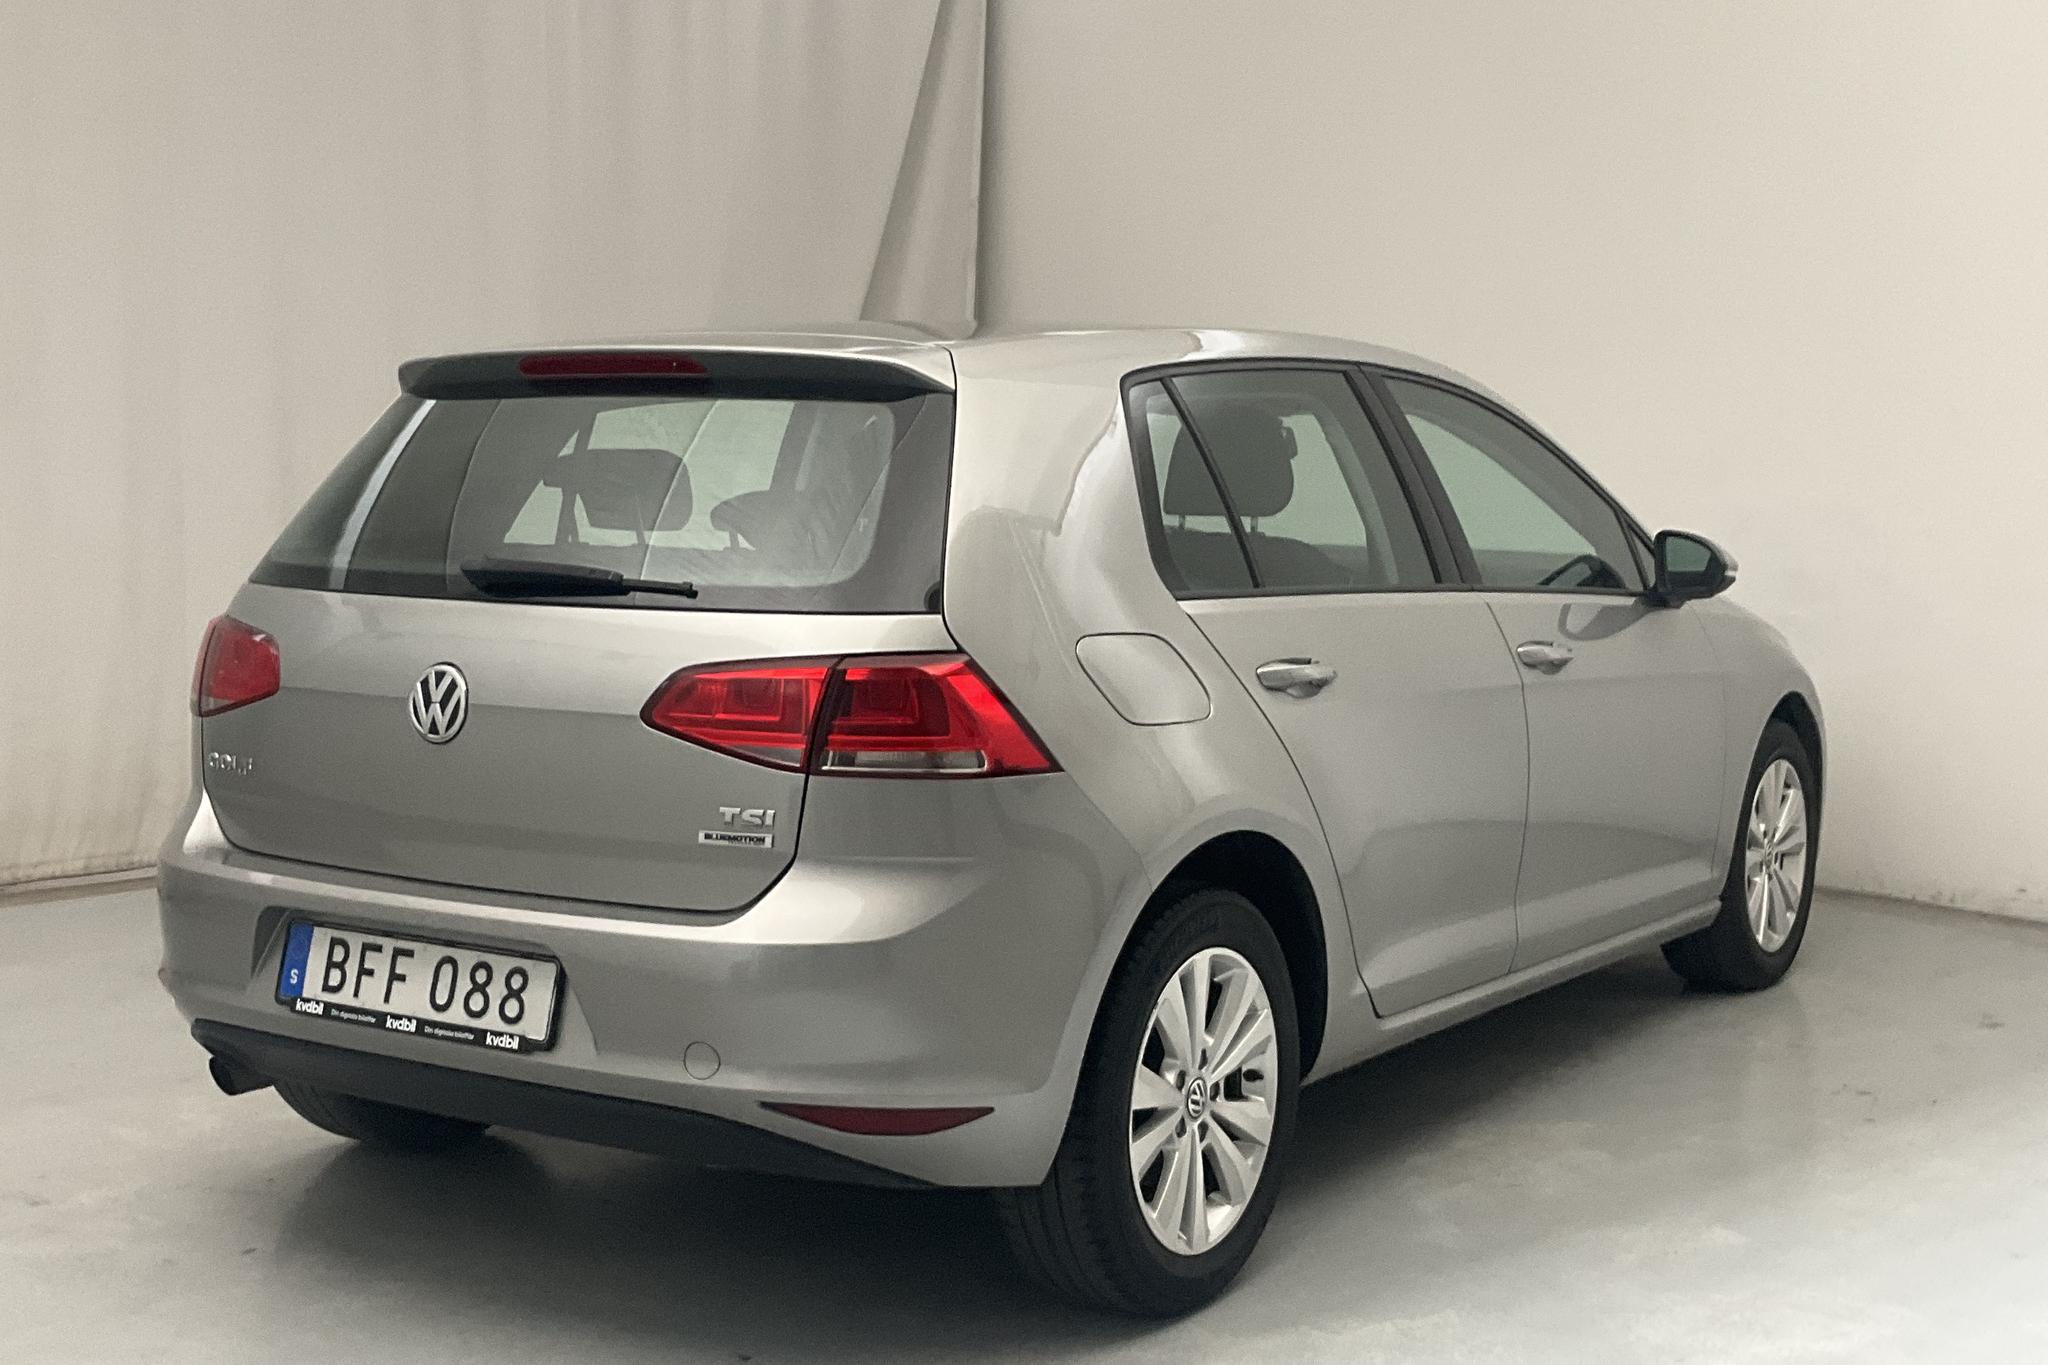 VW Golf VII 1.2 TSI 5dr (105hk) - 107 840 km - Manual - silver - 2015